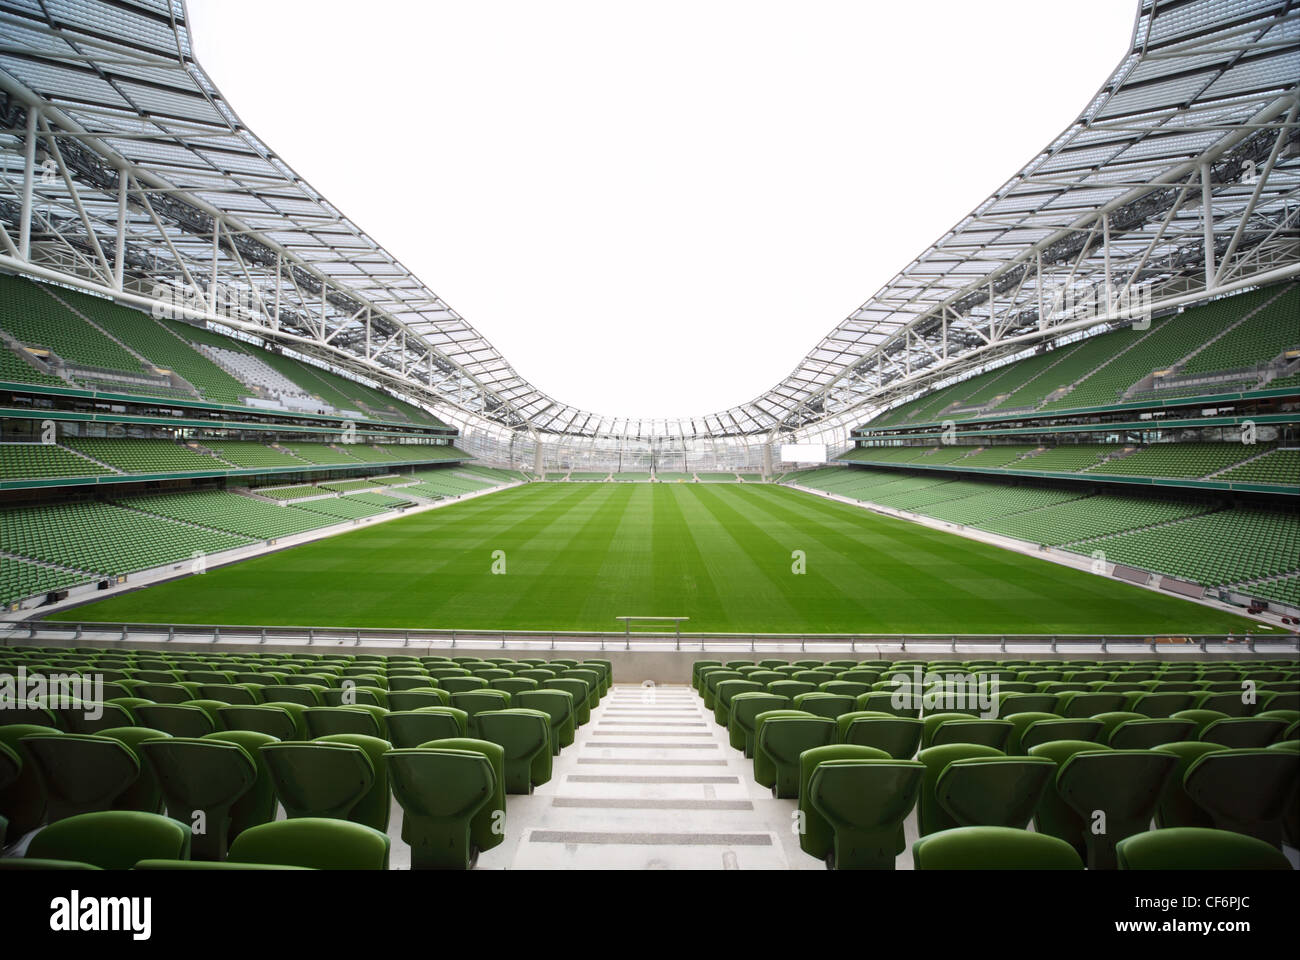 Grüne Sitzreihen in einem leeren Stadion. Vordersitze im Fokus Stockfoto